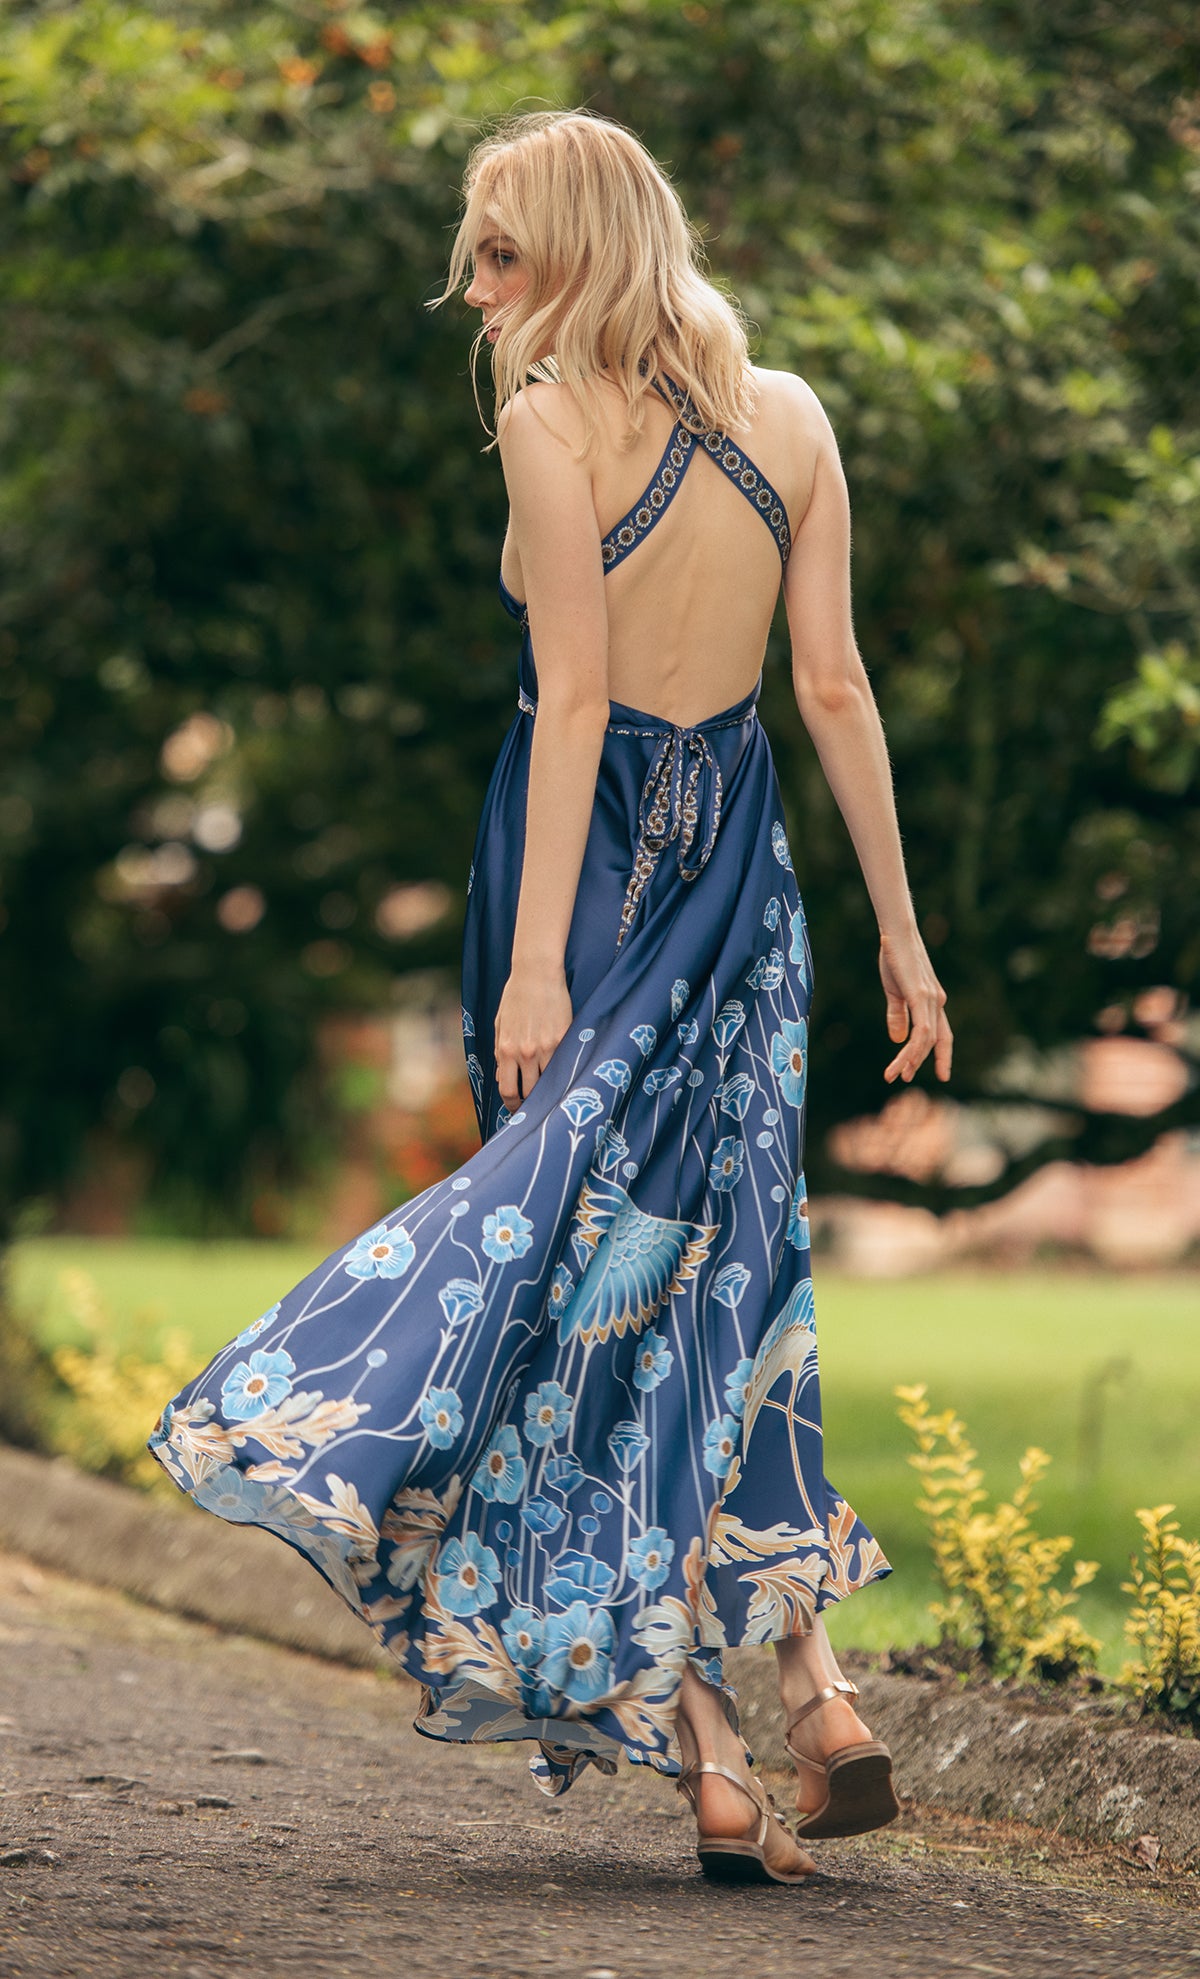 Alejandra Blue Midi dress